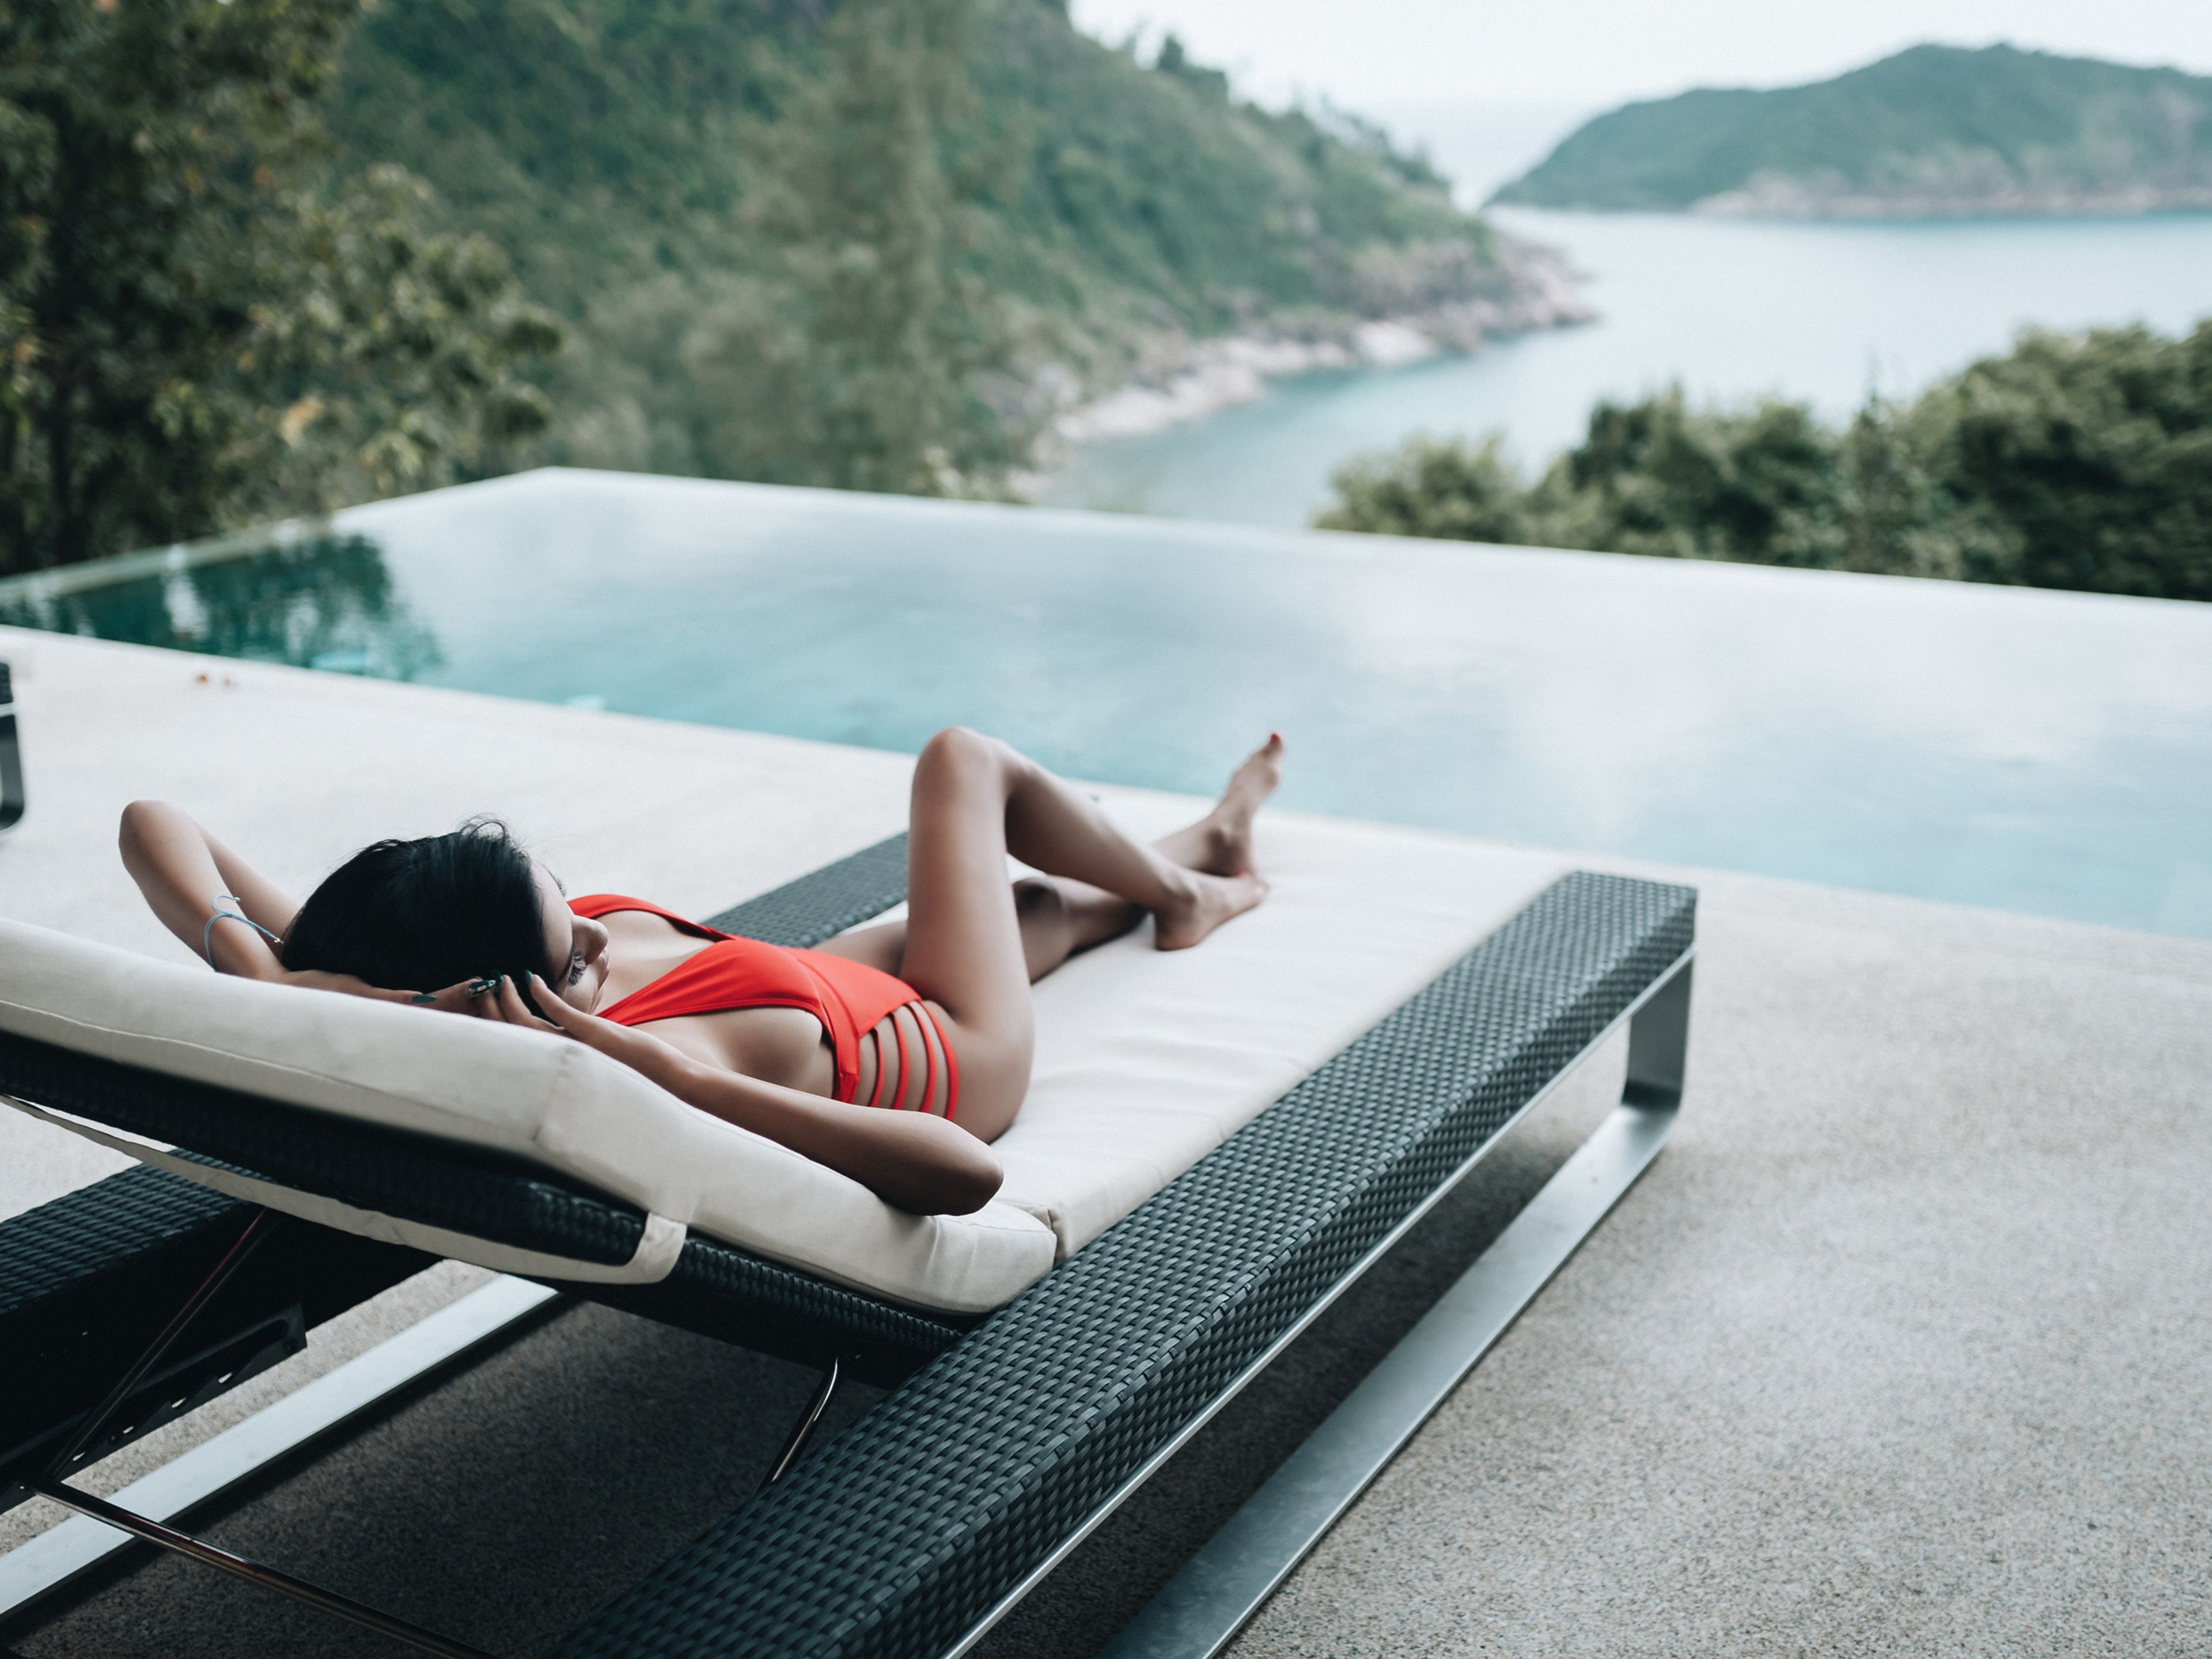 Una mujer se relaja en una tumbona frente a una piscina infinity en Tailandia